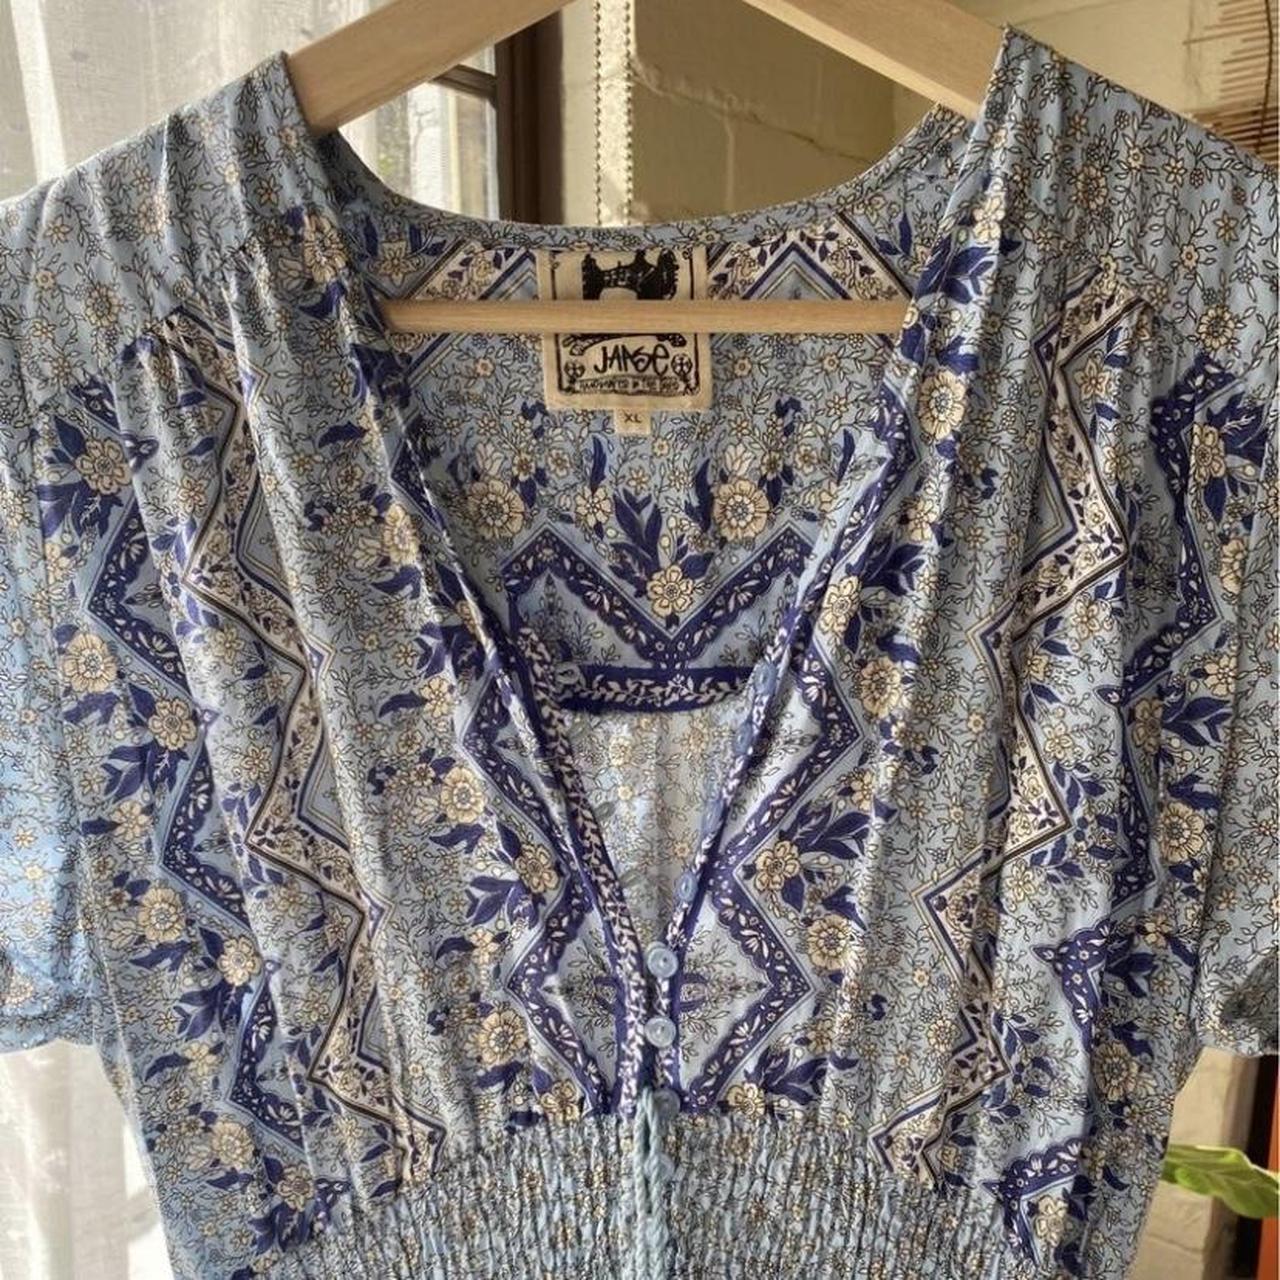 Jaase Blue patterned dress 💙💙💙 - Size XL (I’m a... - Depop